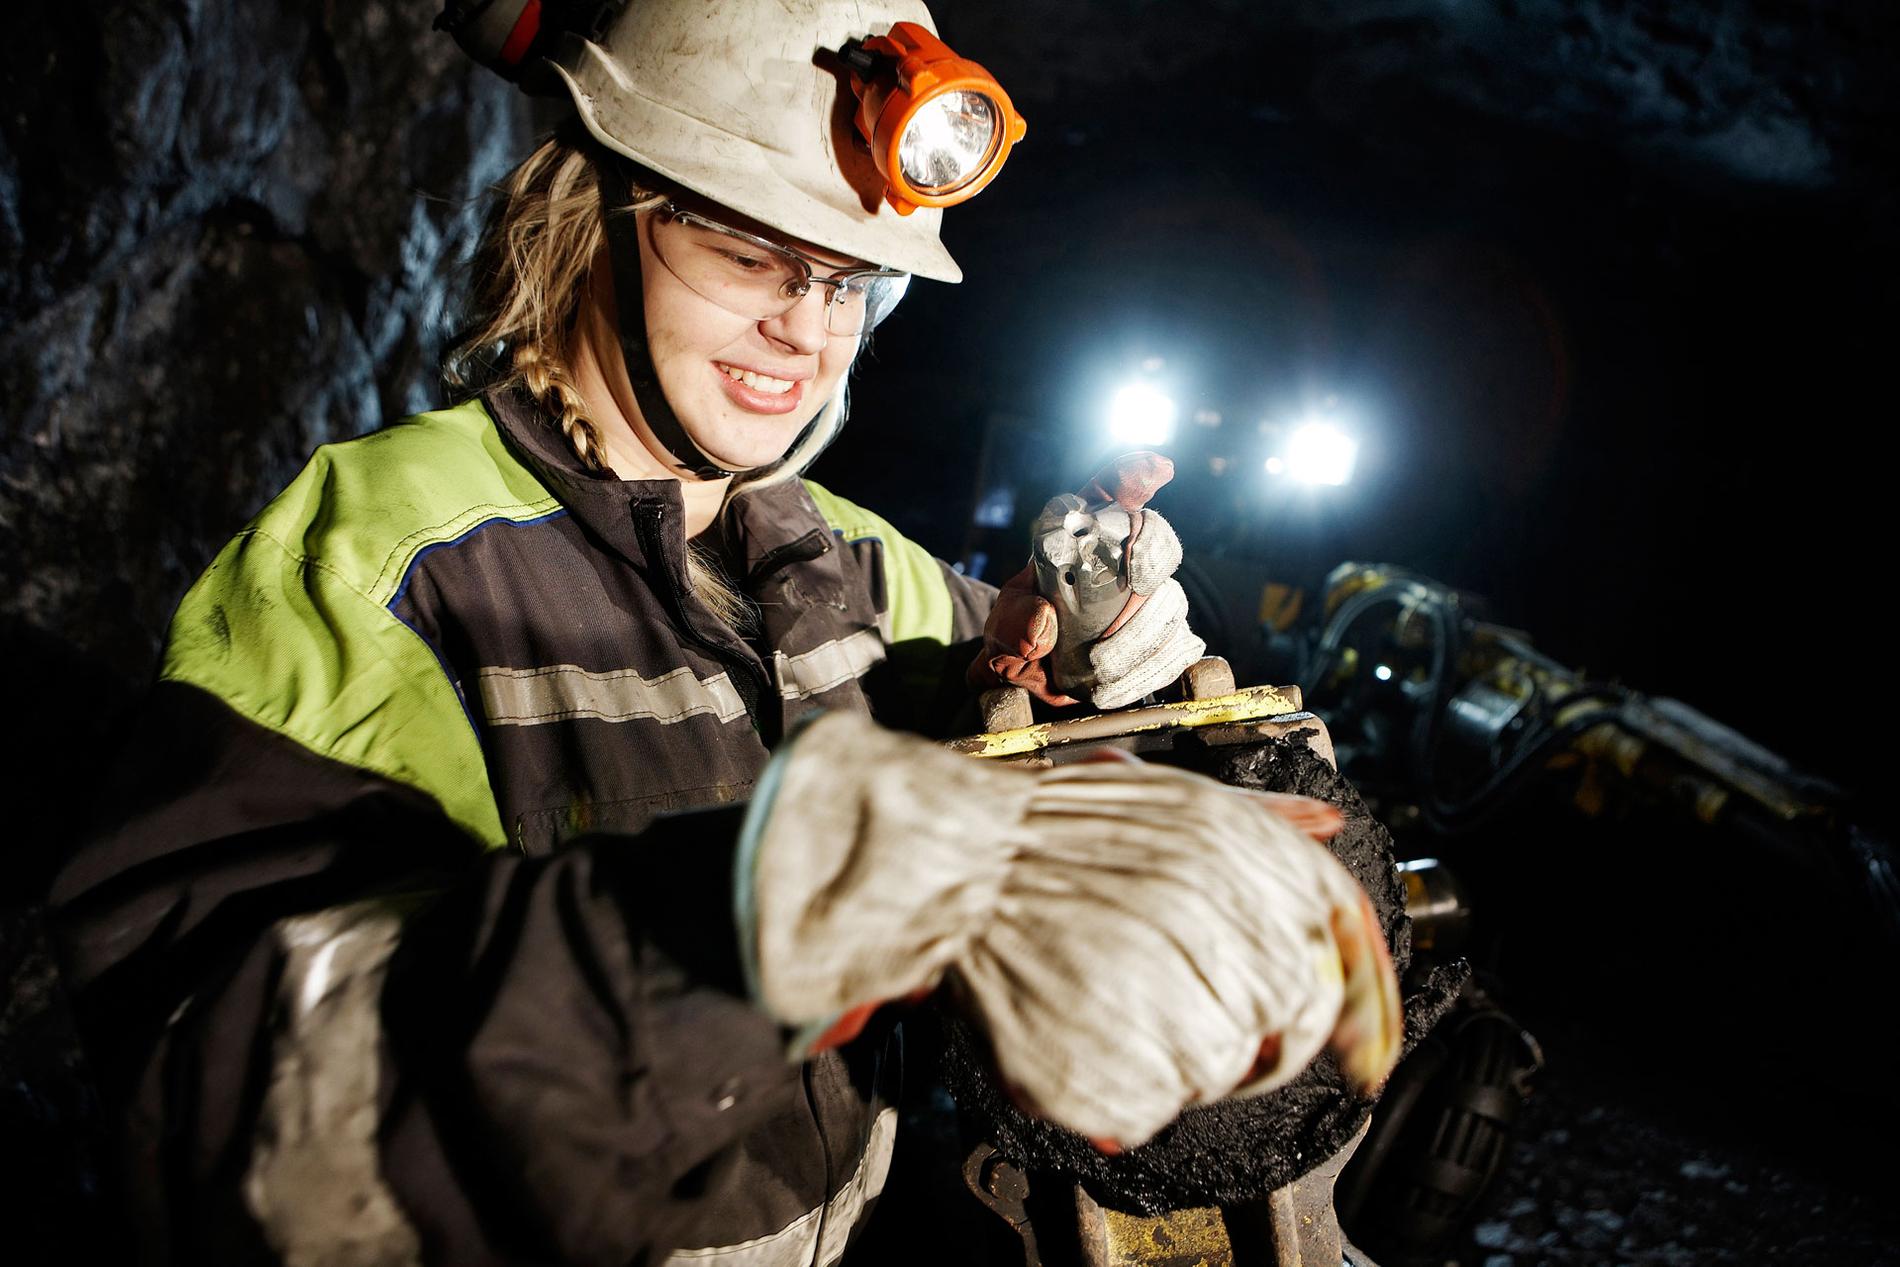 Det kommer råda brist på gruvarbetare i år. Emma Kiviniemi arbetar i Kiirunavaaragruvan i Kiruna. ”Jag har alltid sökt efter utmaningar, det var därför jag valde att jobba i gruvan”, säger hon.